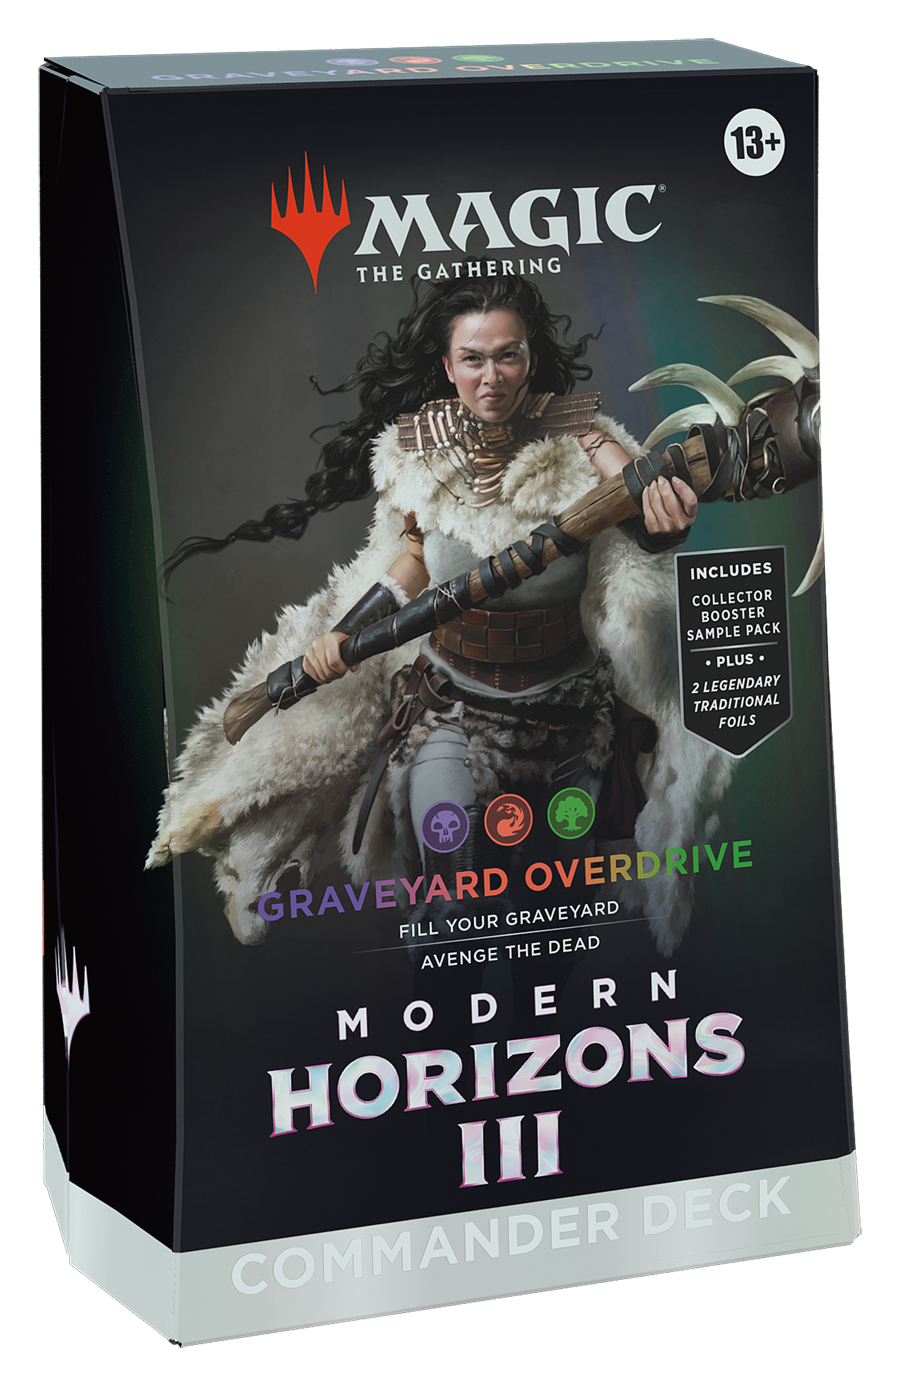 Modern Horizons 3 - Commander Deck (Graveyard Overdrive) PRE-ORDER 14 JUN